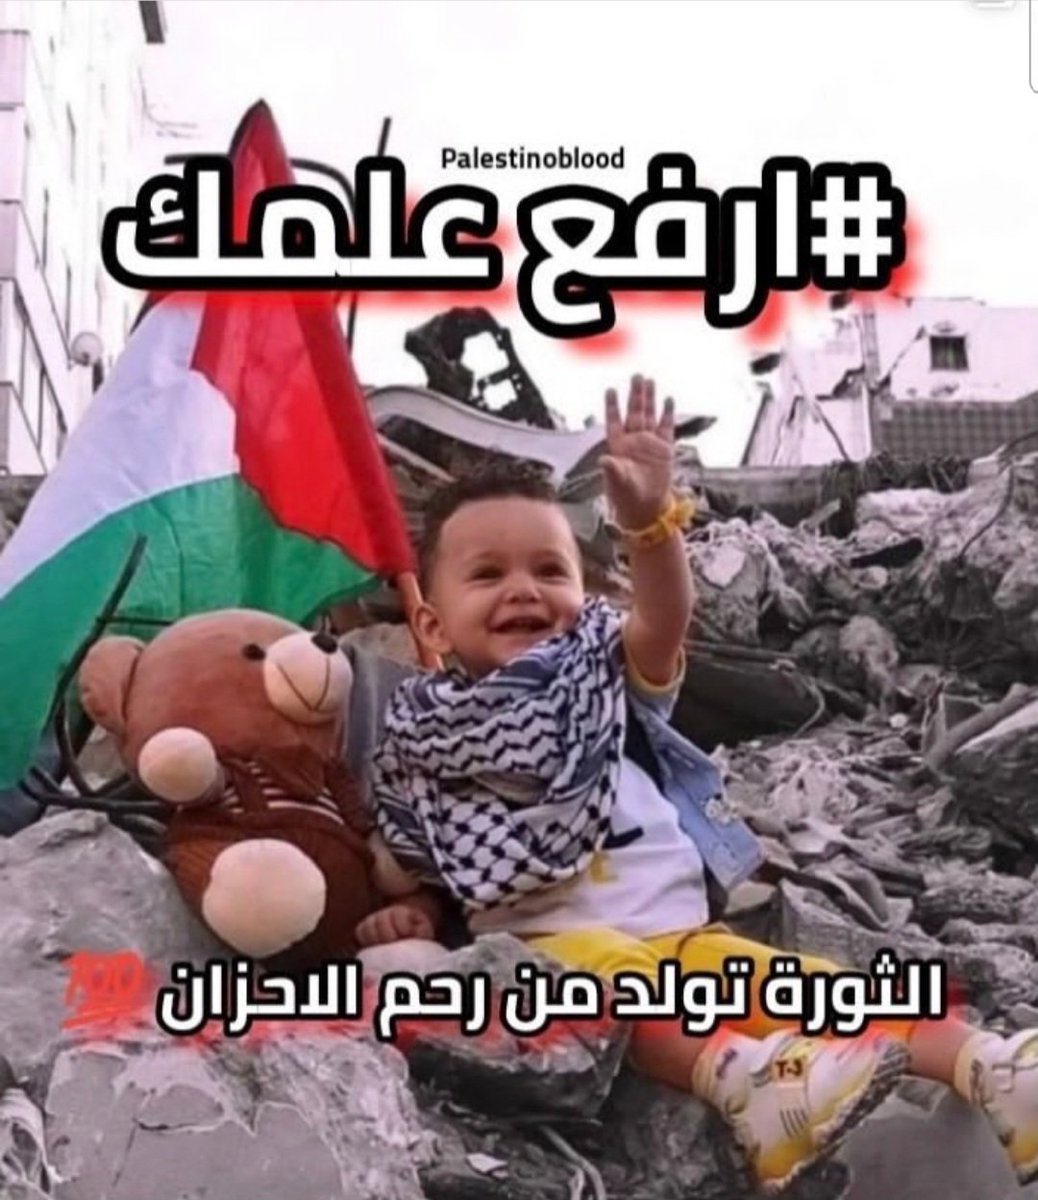 العلم الفلسطيني، رمز للهوية و التضامن ...🇵🇸🇵🇸🇵🇸
الثورة تولد من رحم الاحزان.
#ارفع_علمك
#قمة_جدة